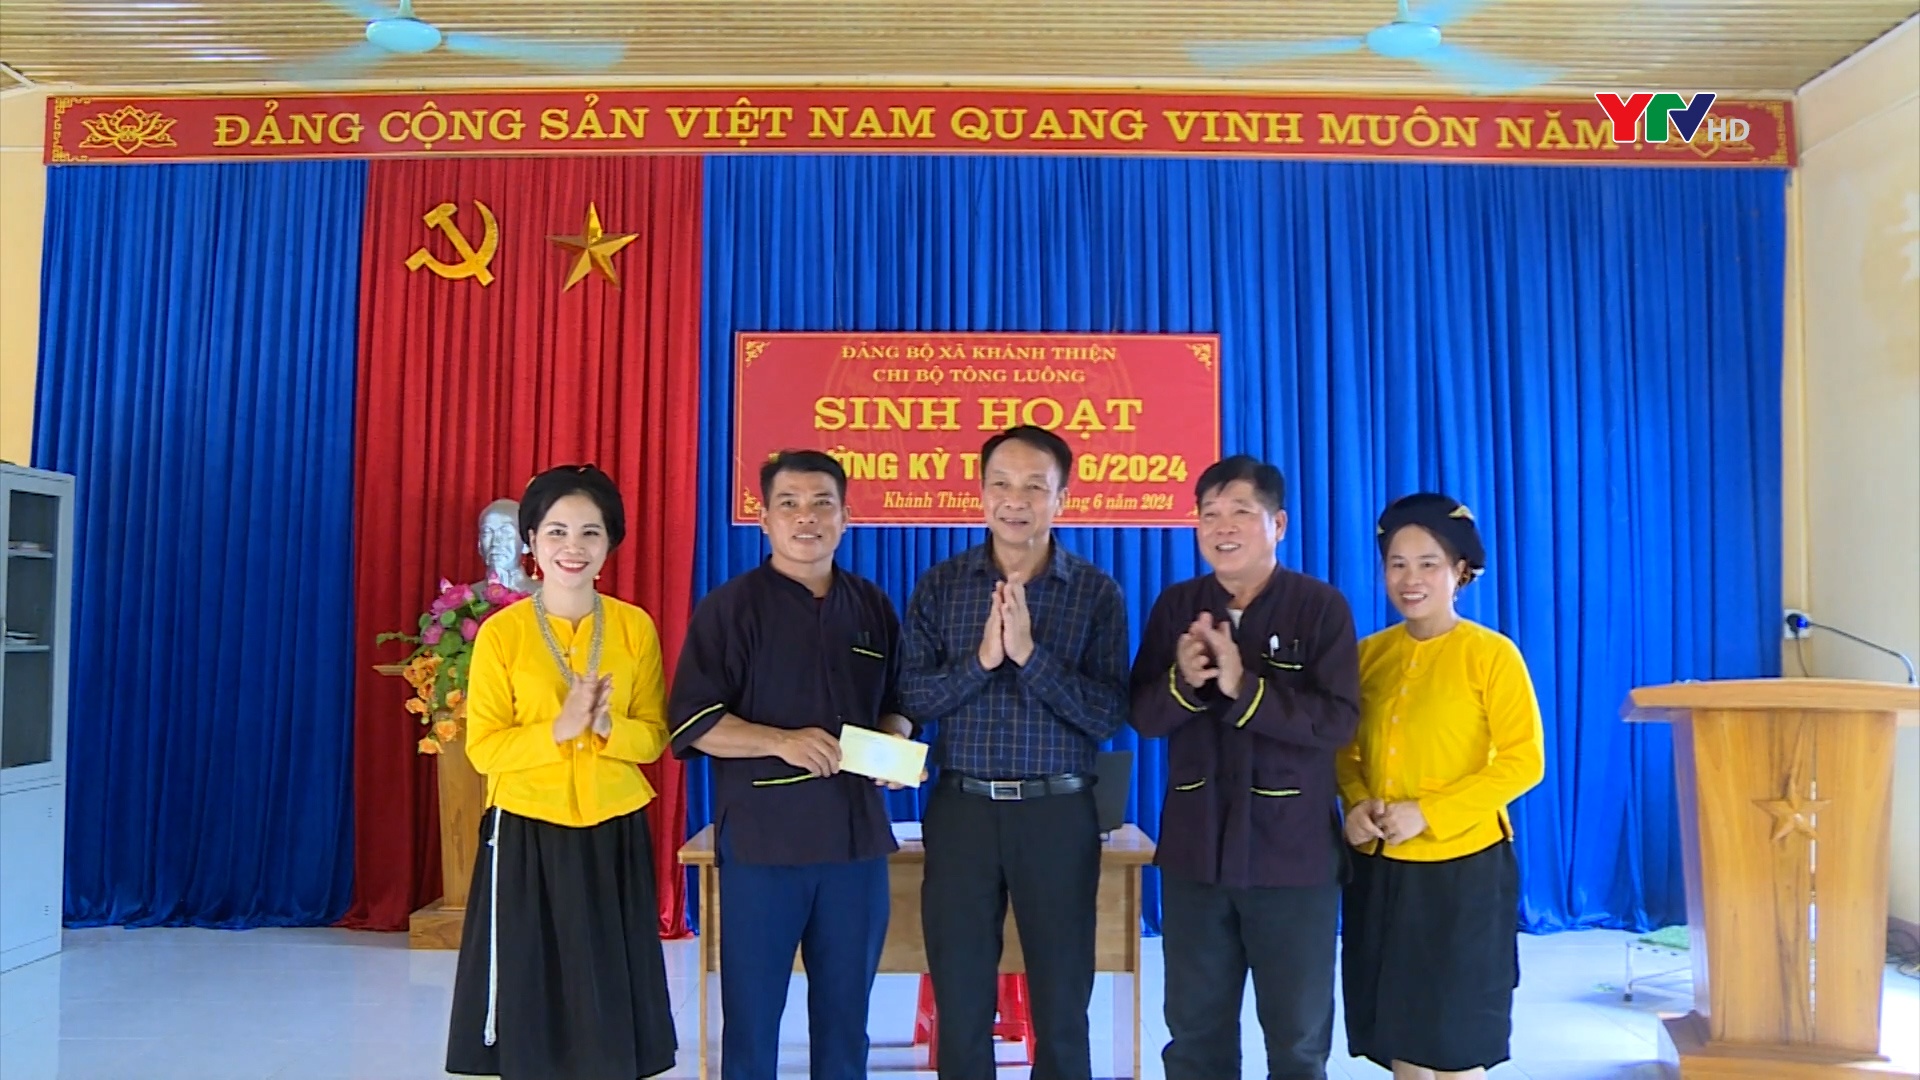 Đồng chí Phó Chủ tịch Thường trực HĐND tỉnh Vũ Quỳnh Khánh dự sinh hoạt tại Chi bộ thôn Tông Luông, xã Khánh Thiện, huyện Lục Yên